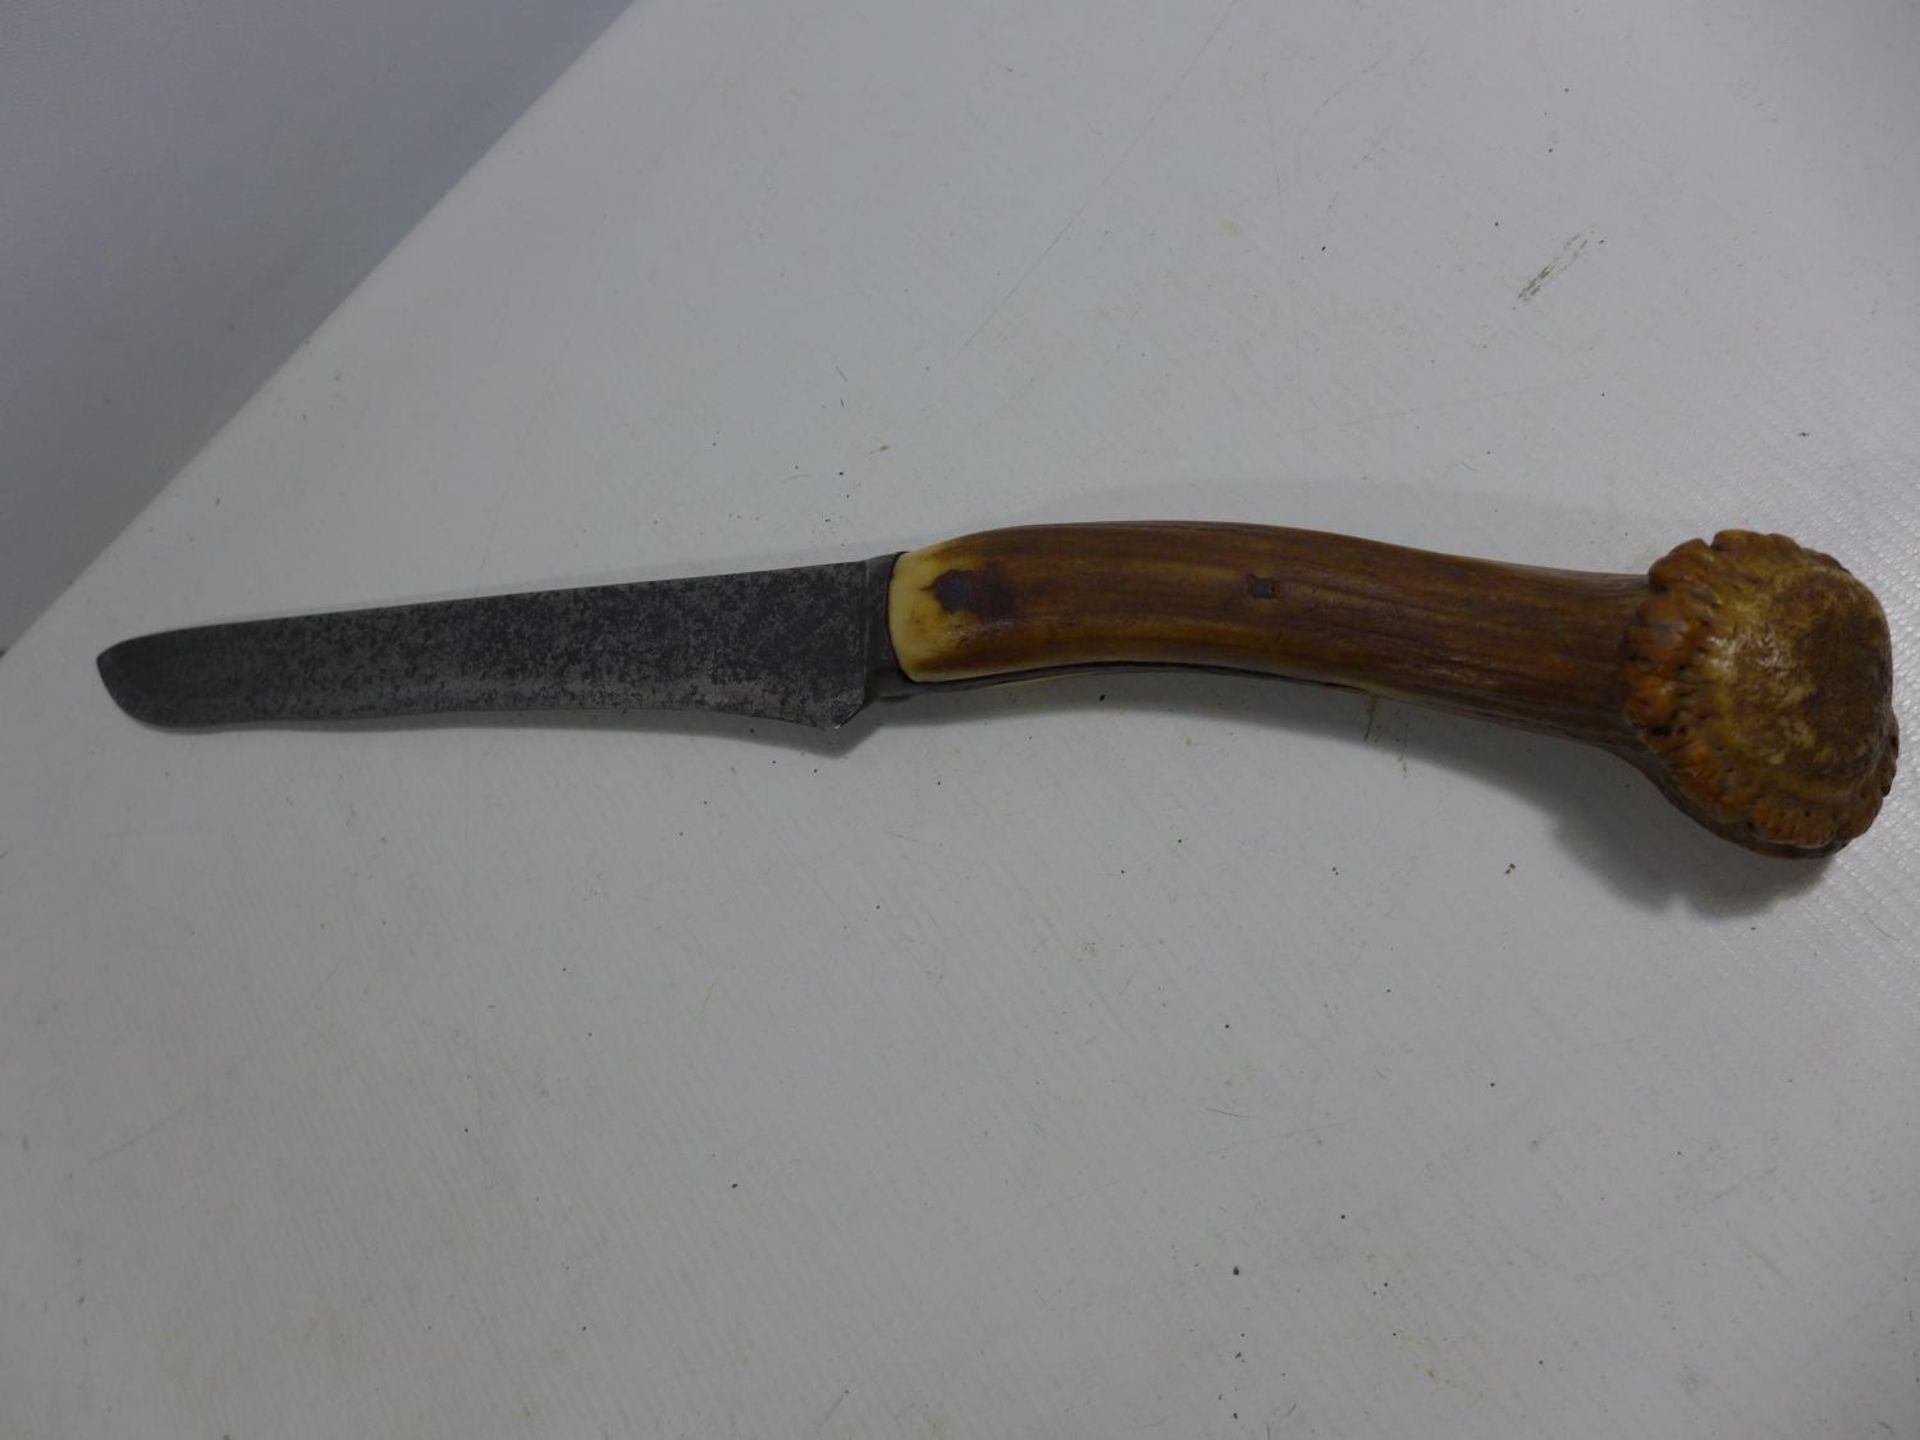 A VINTAGE STAGHORN HANDLED KNIFE 25CM BLADE, LENGTH 41CM - Image 3 of 4